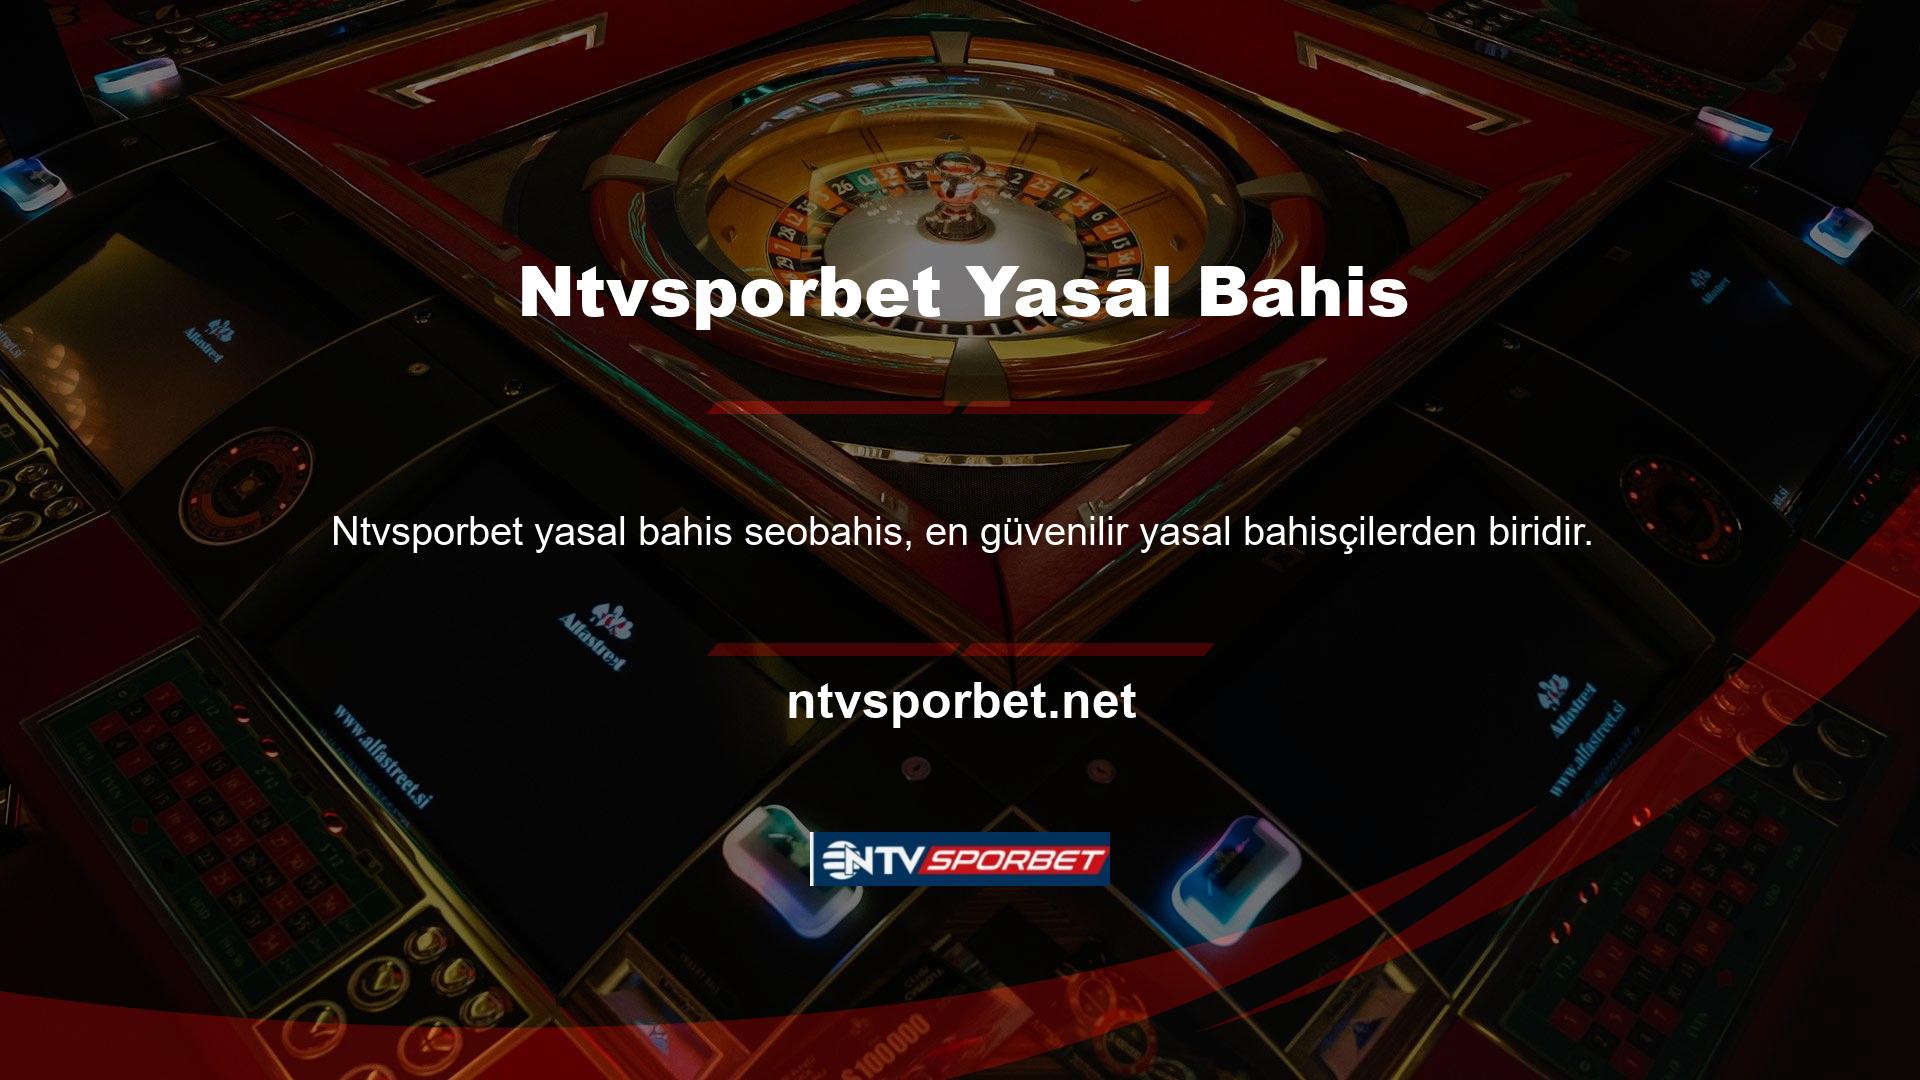 Ntvsporbet, casino oyuncularının da slot makine oyunlarından zevk aldığı ülkemizdeki kurumlarda kendine yer edinmiştir